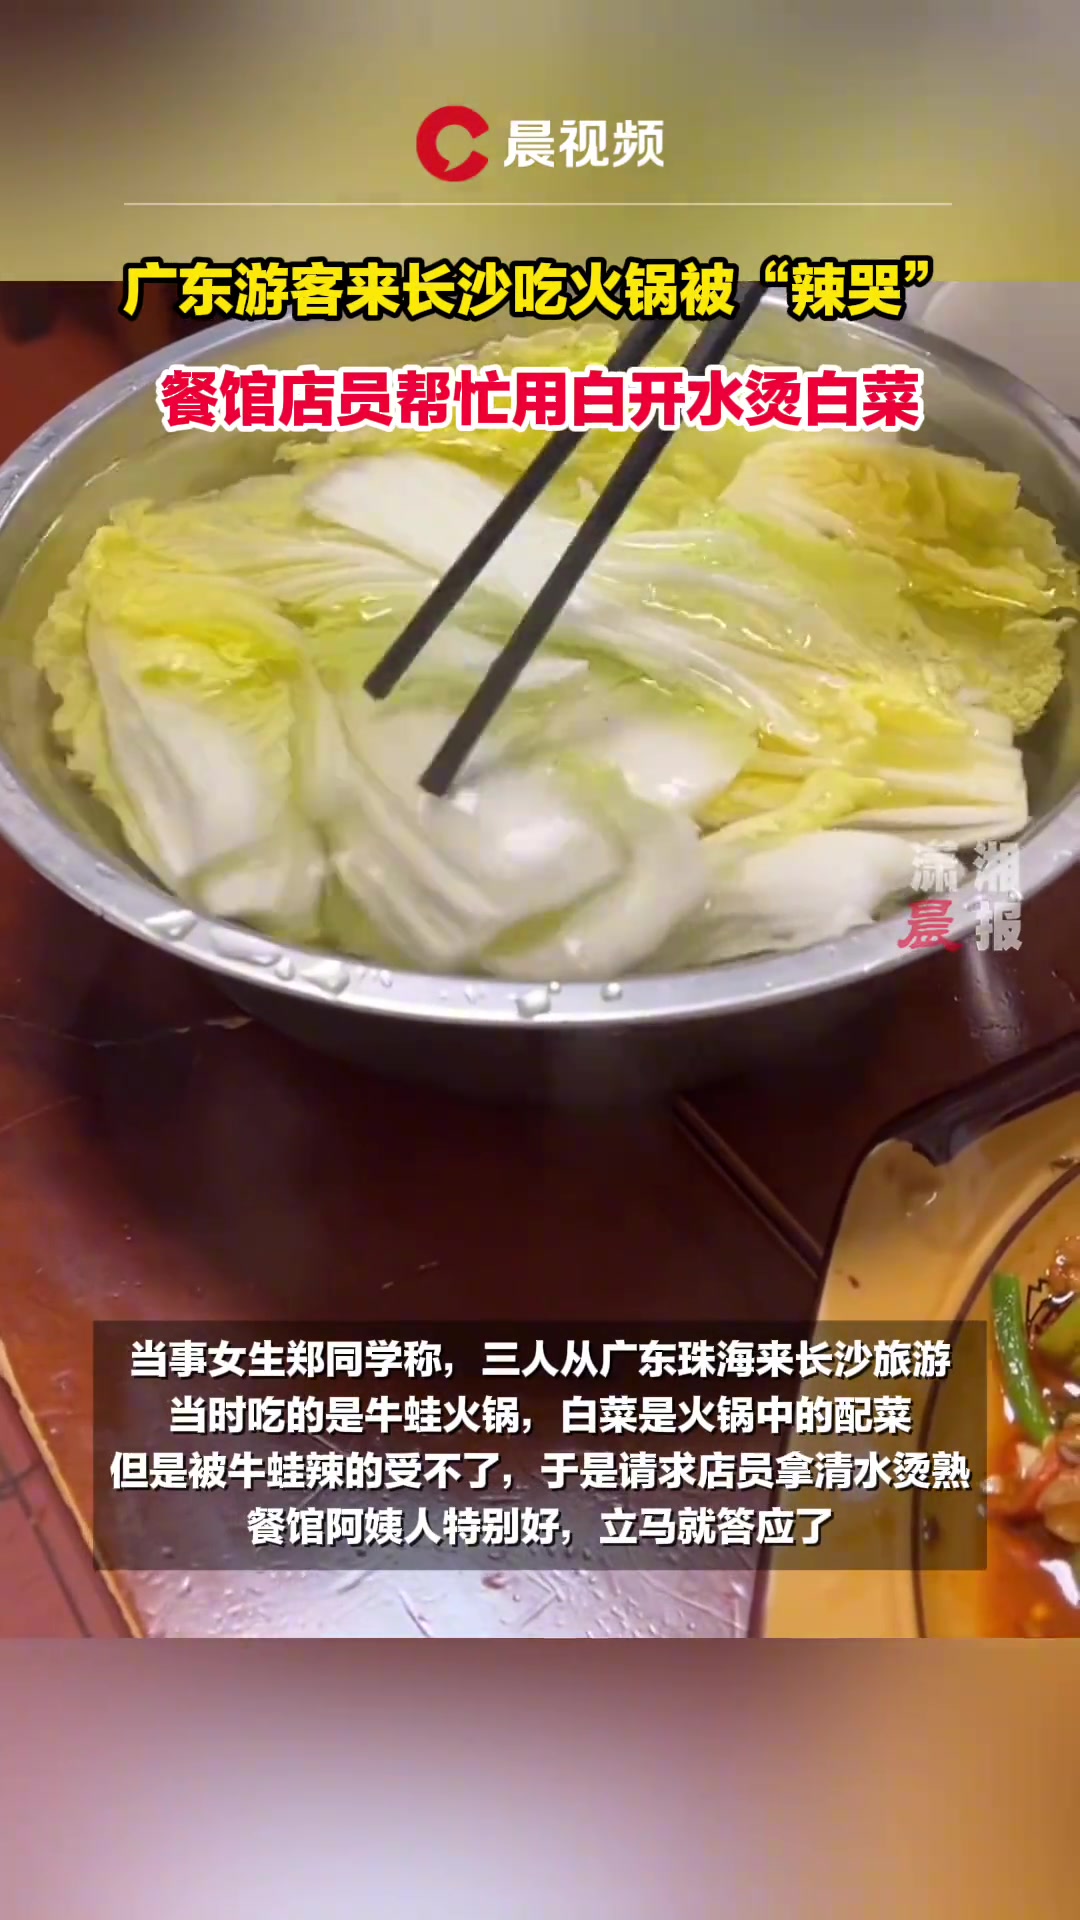 广东人来长沙吃火锅被“辣哭” 店员帮忙用白开水烫菜